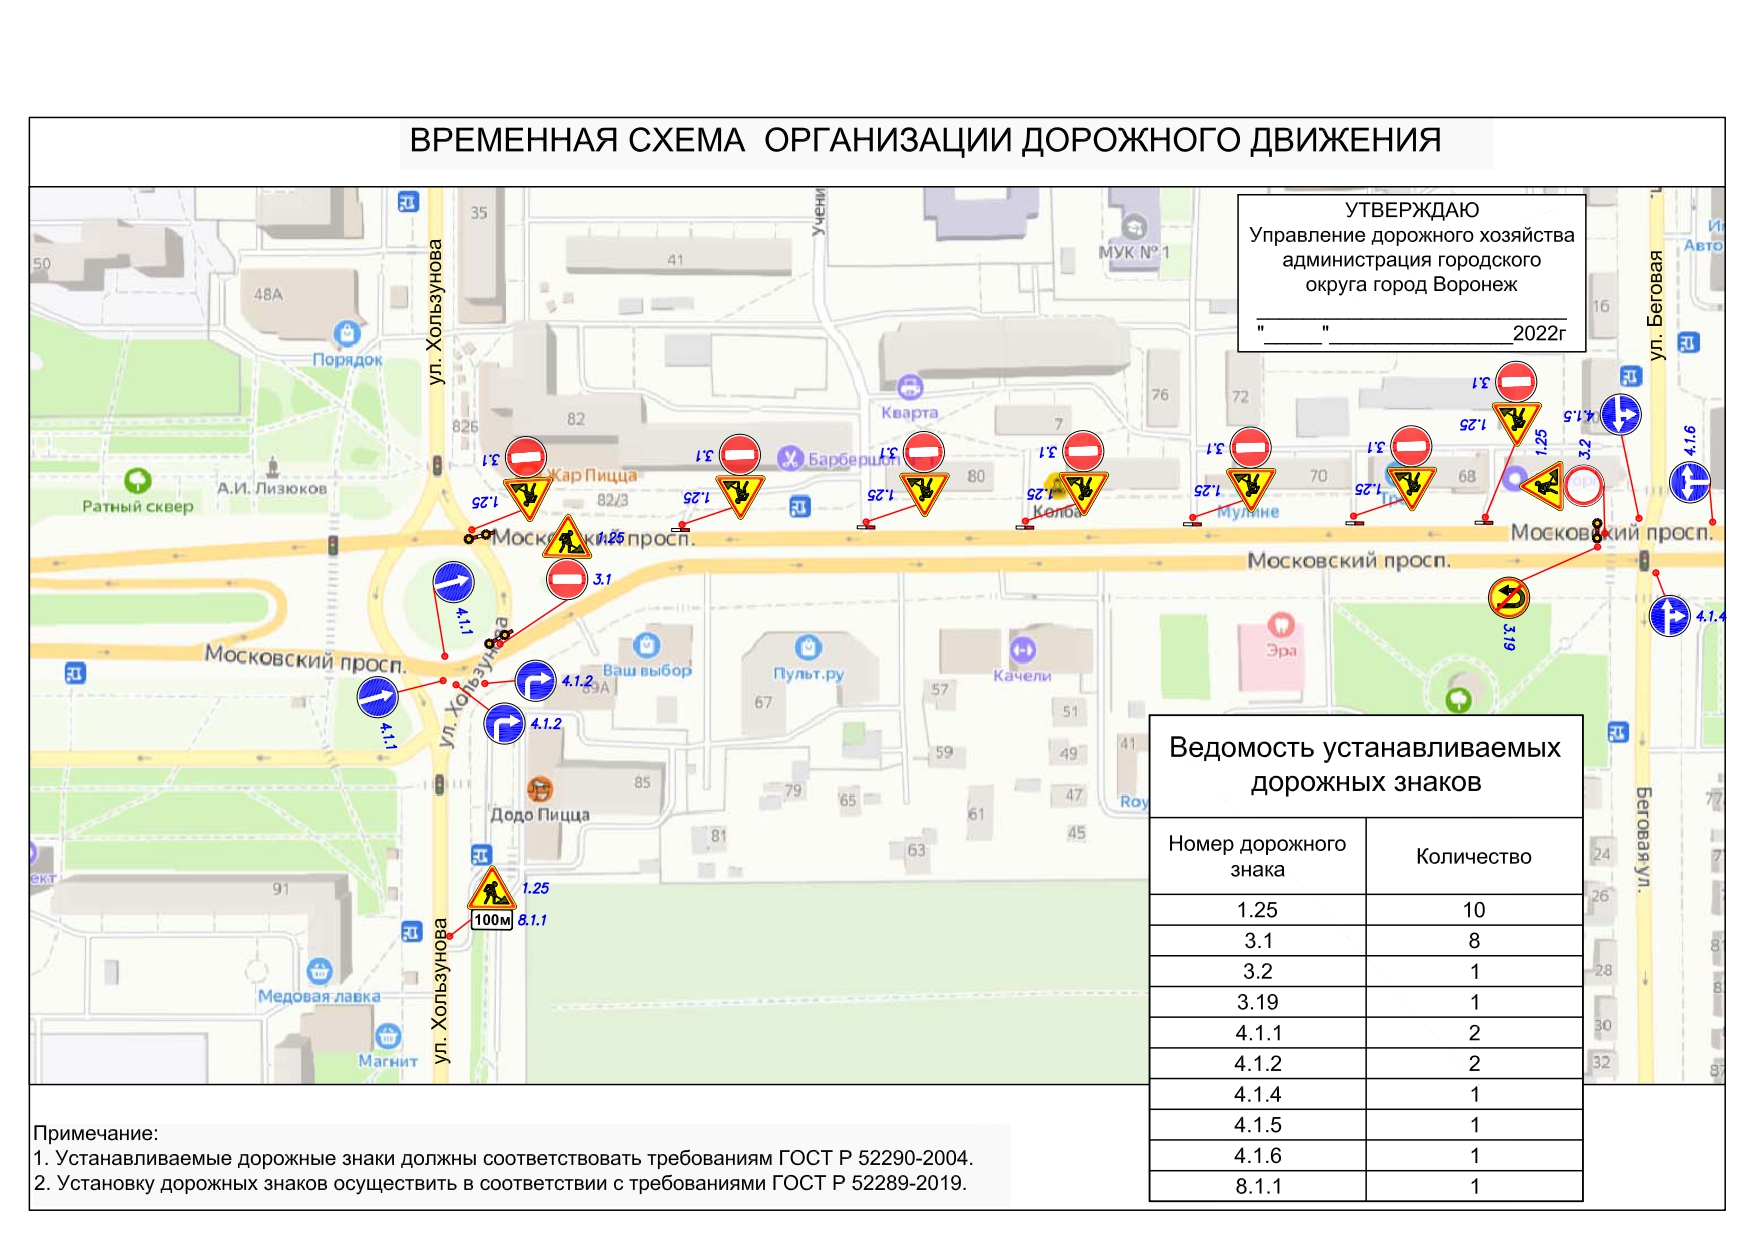 Участок Московского проспекта останется закрытым на неизвестный срок из-за ремонтных работ